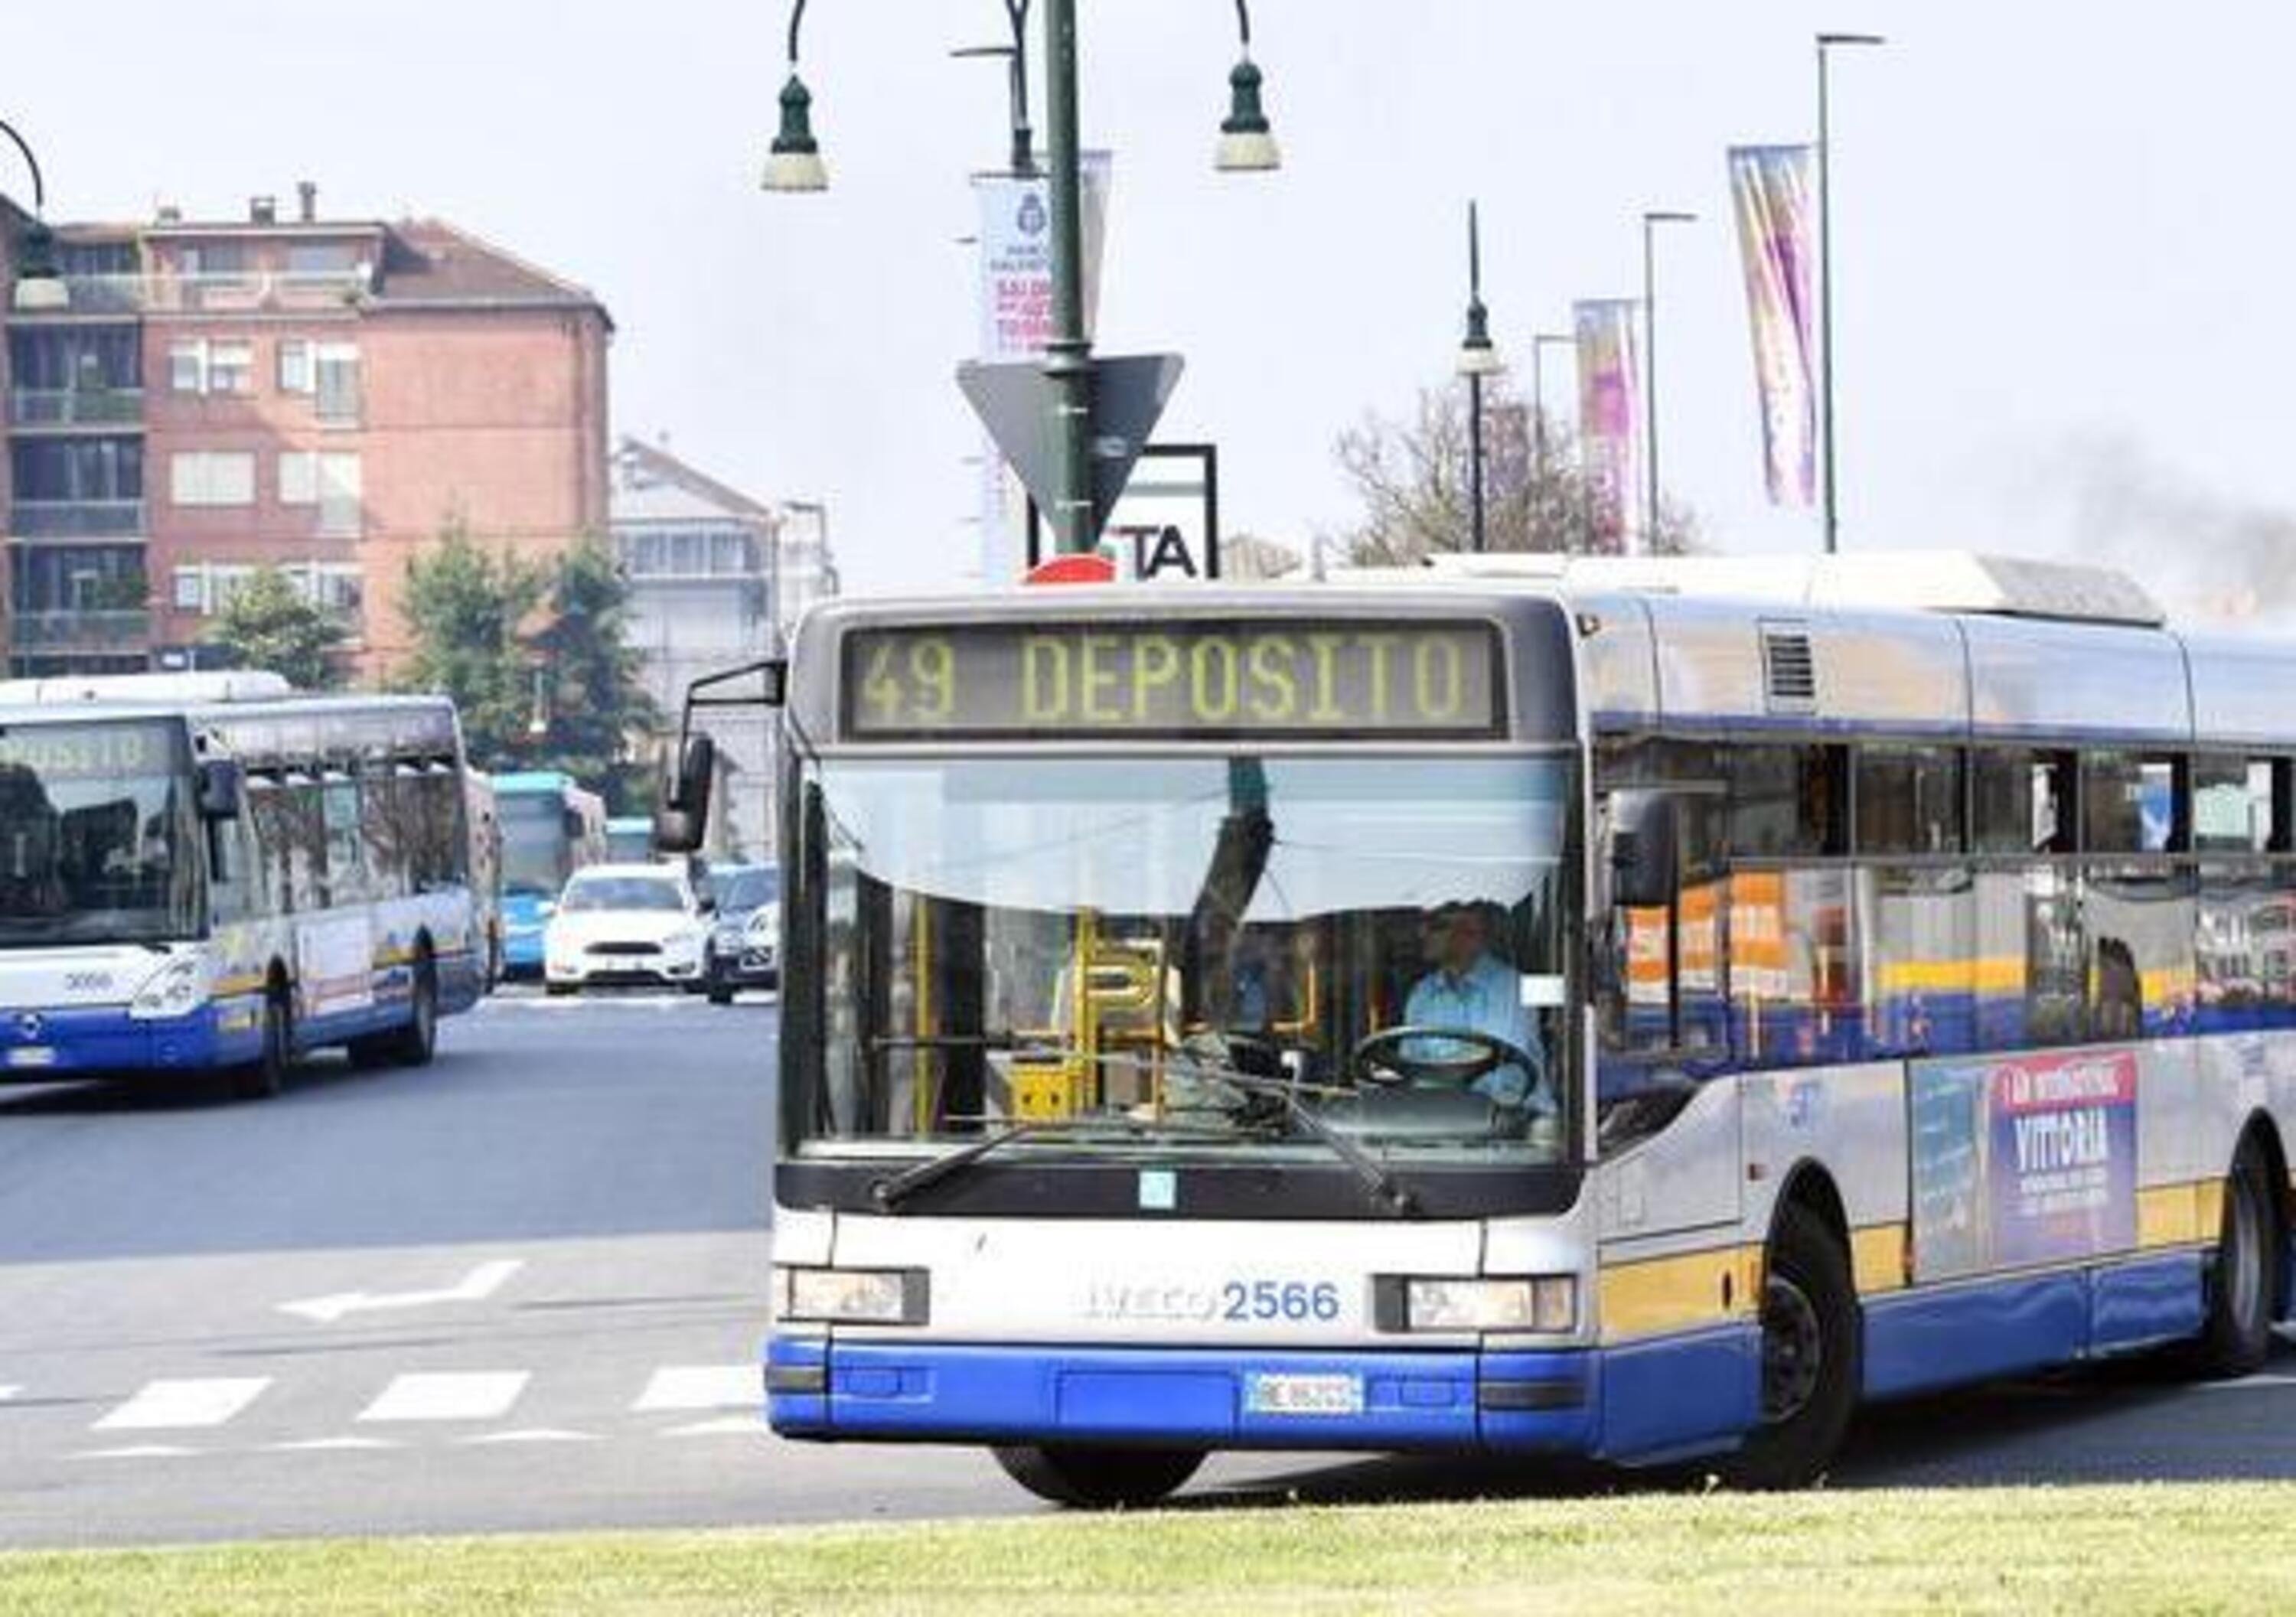 Blocco Diesel Euro 5 Torino, aumentano i passaggi dei bus